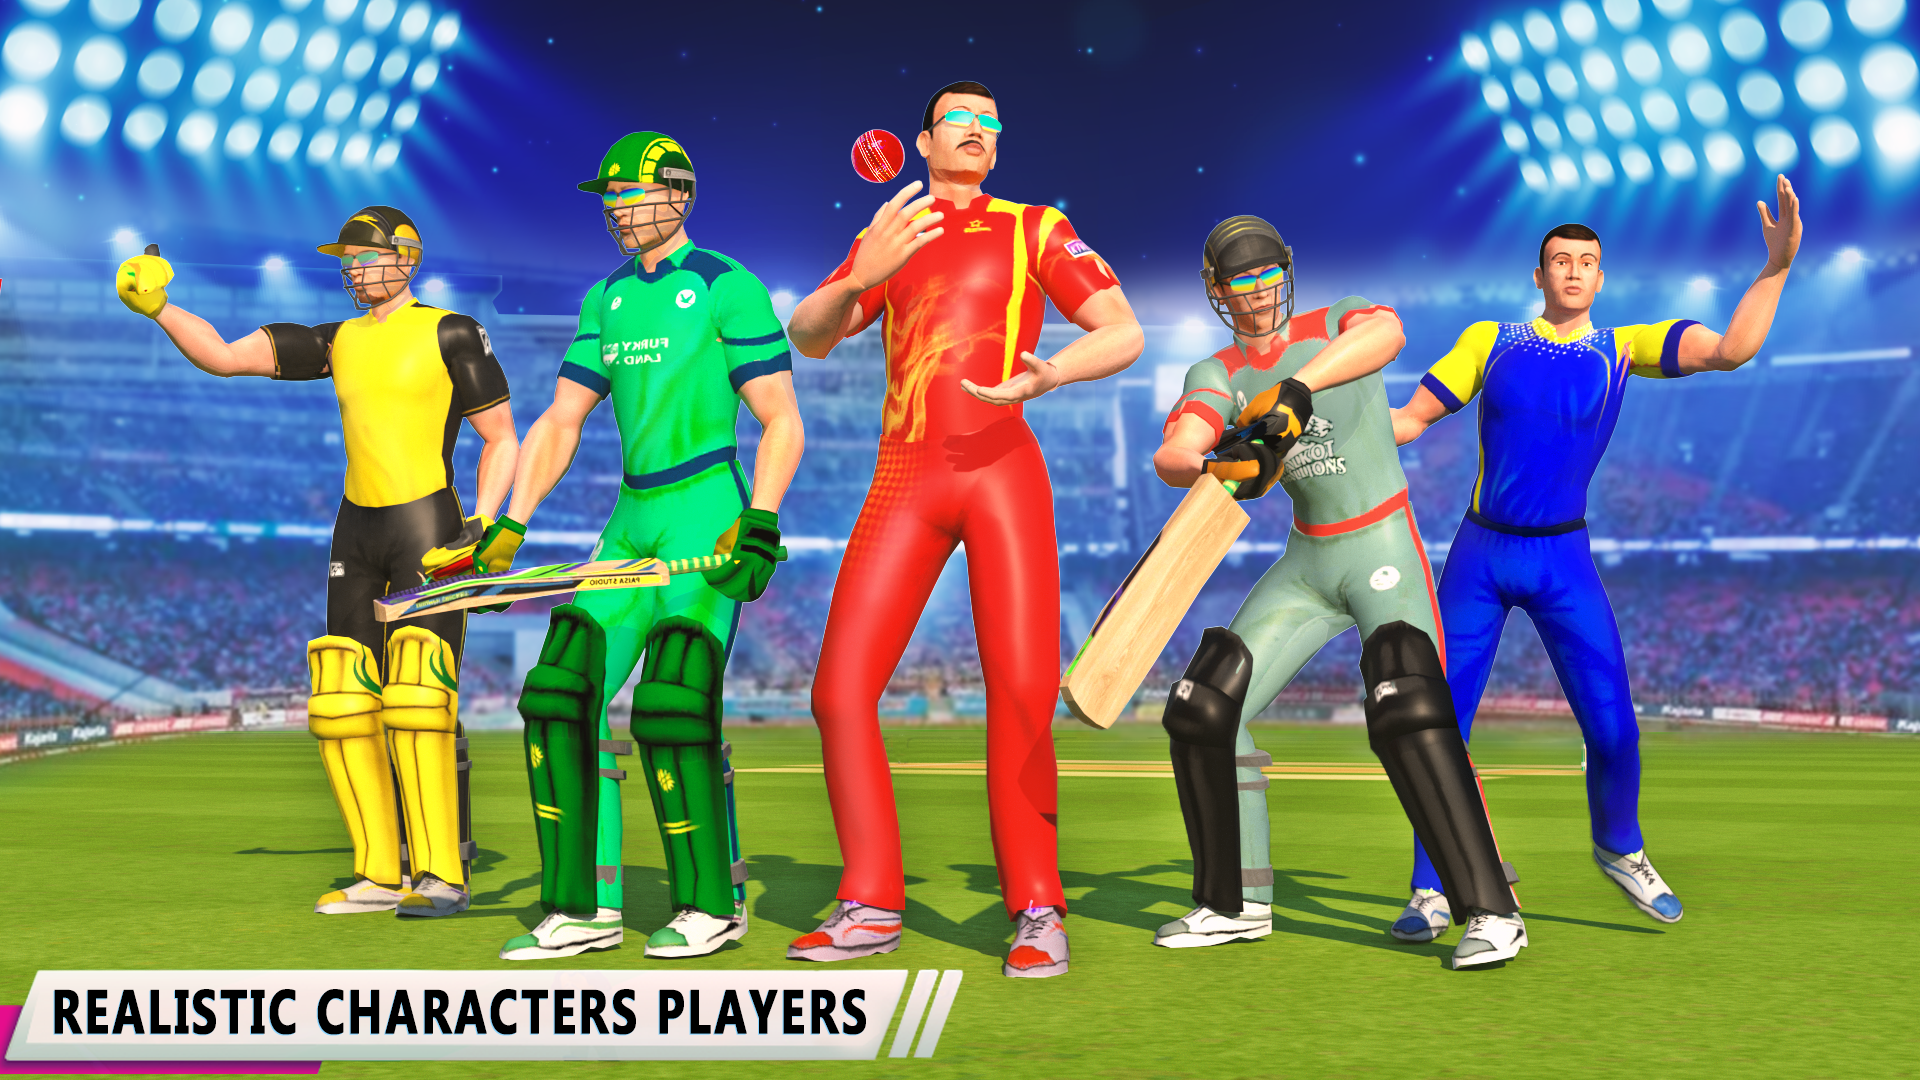 Screenshot 1 of Игры в крикет IPL в реальном мире 1.0.11